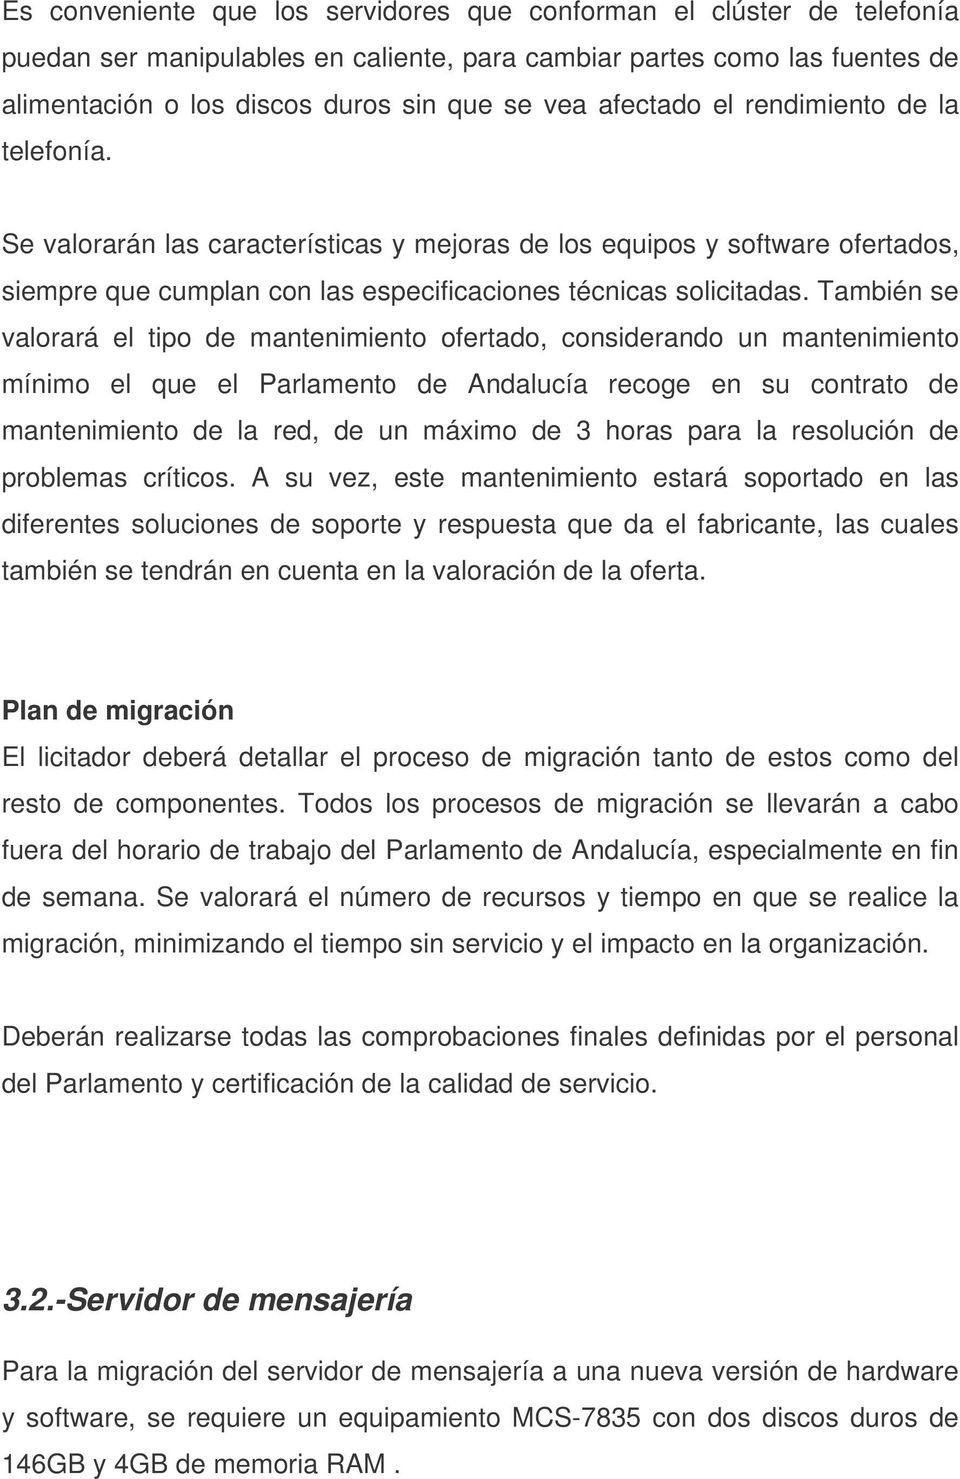 También se valorará el tipo de mantenimiento ofertado, considerando un mantenimiento mínimo el que el Parlamento de Andalucía recoge en su contrato de mantenimiento de la red, de un máximo de 3 horas